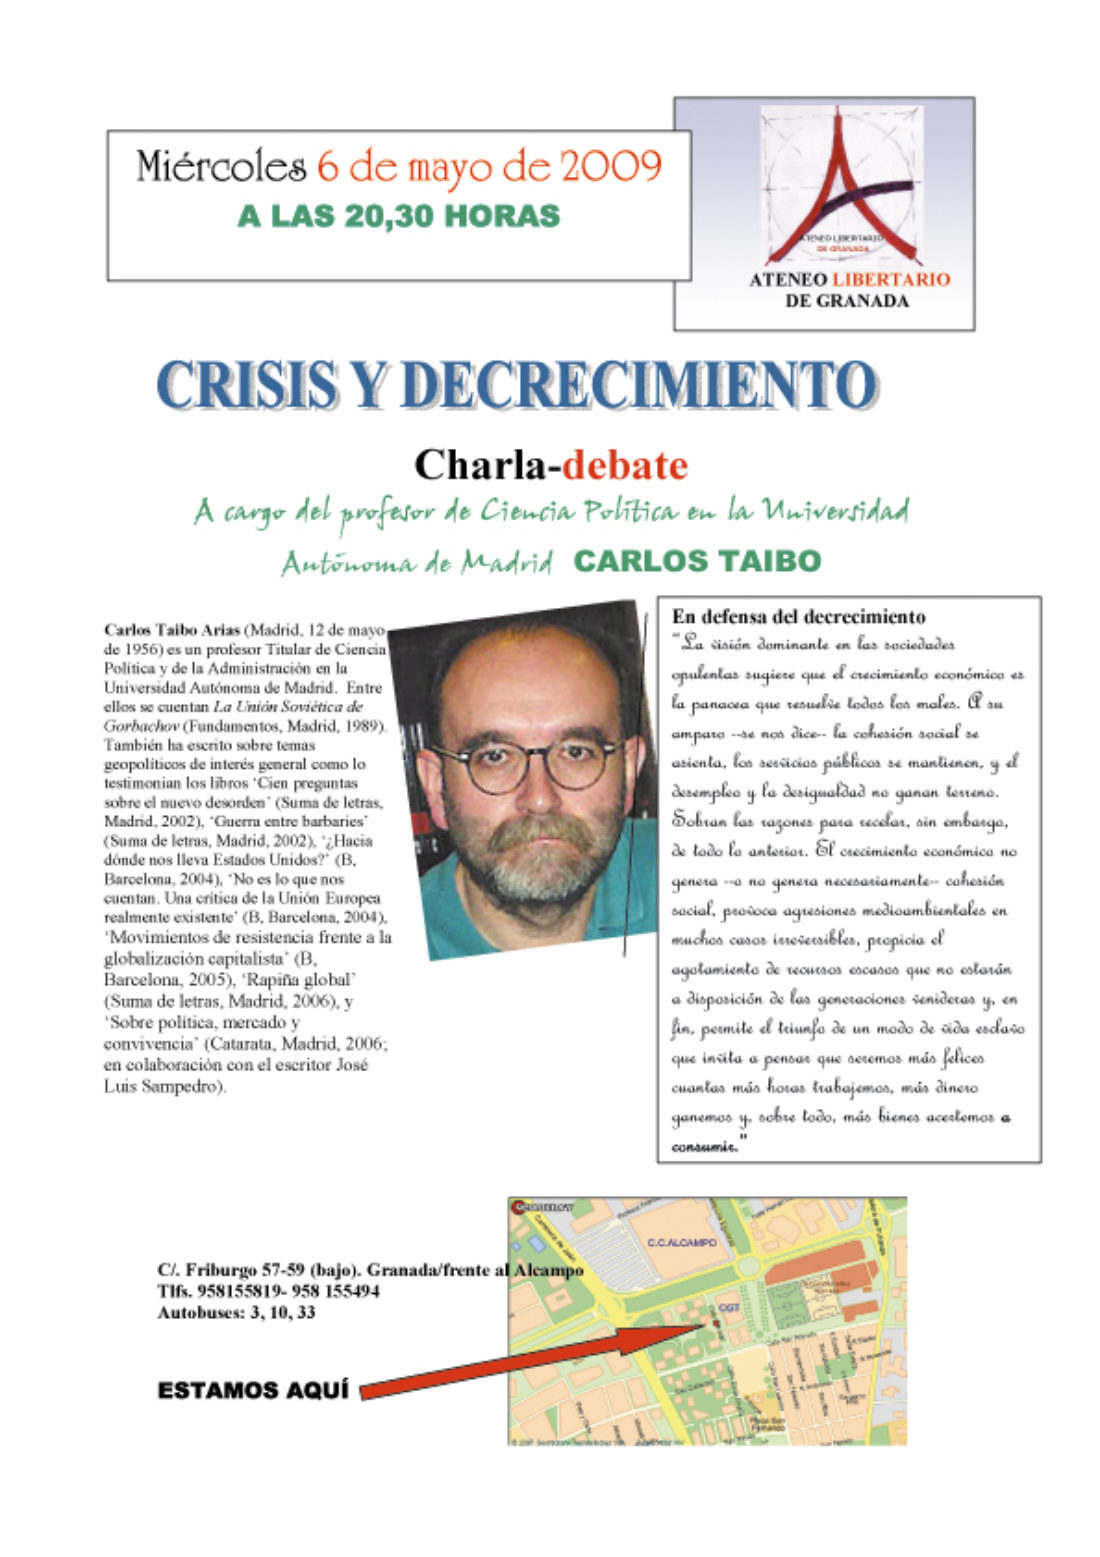 Ateneo Libertario de Granada : Charla-debate «Crisis y decrecimiento»